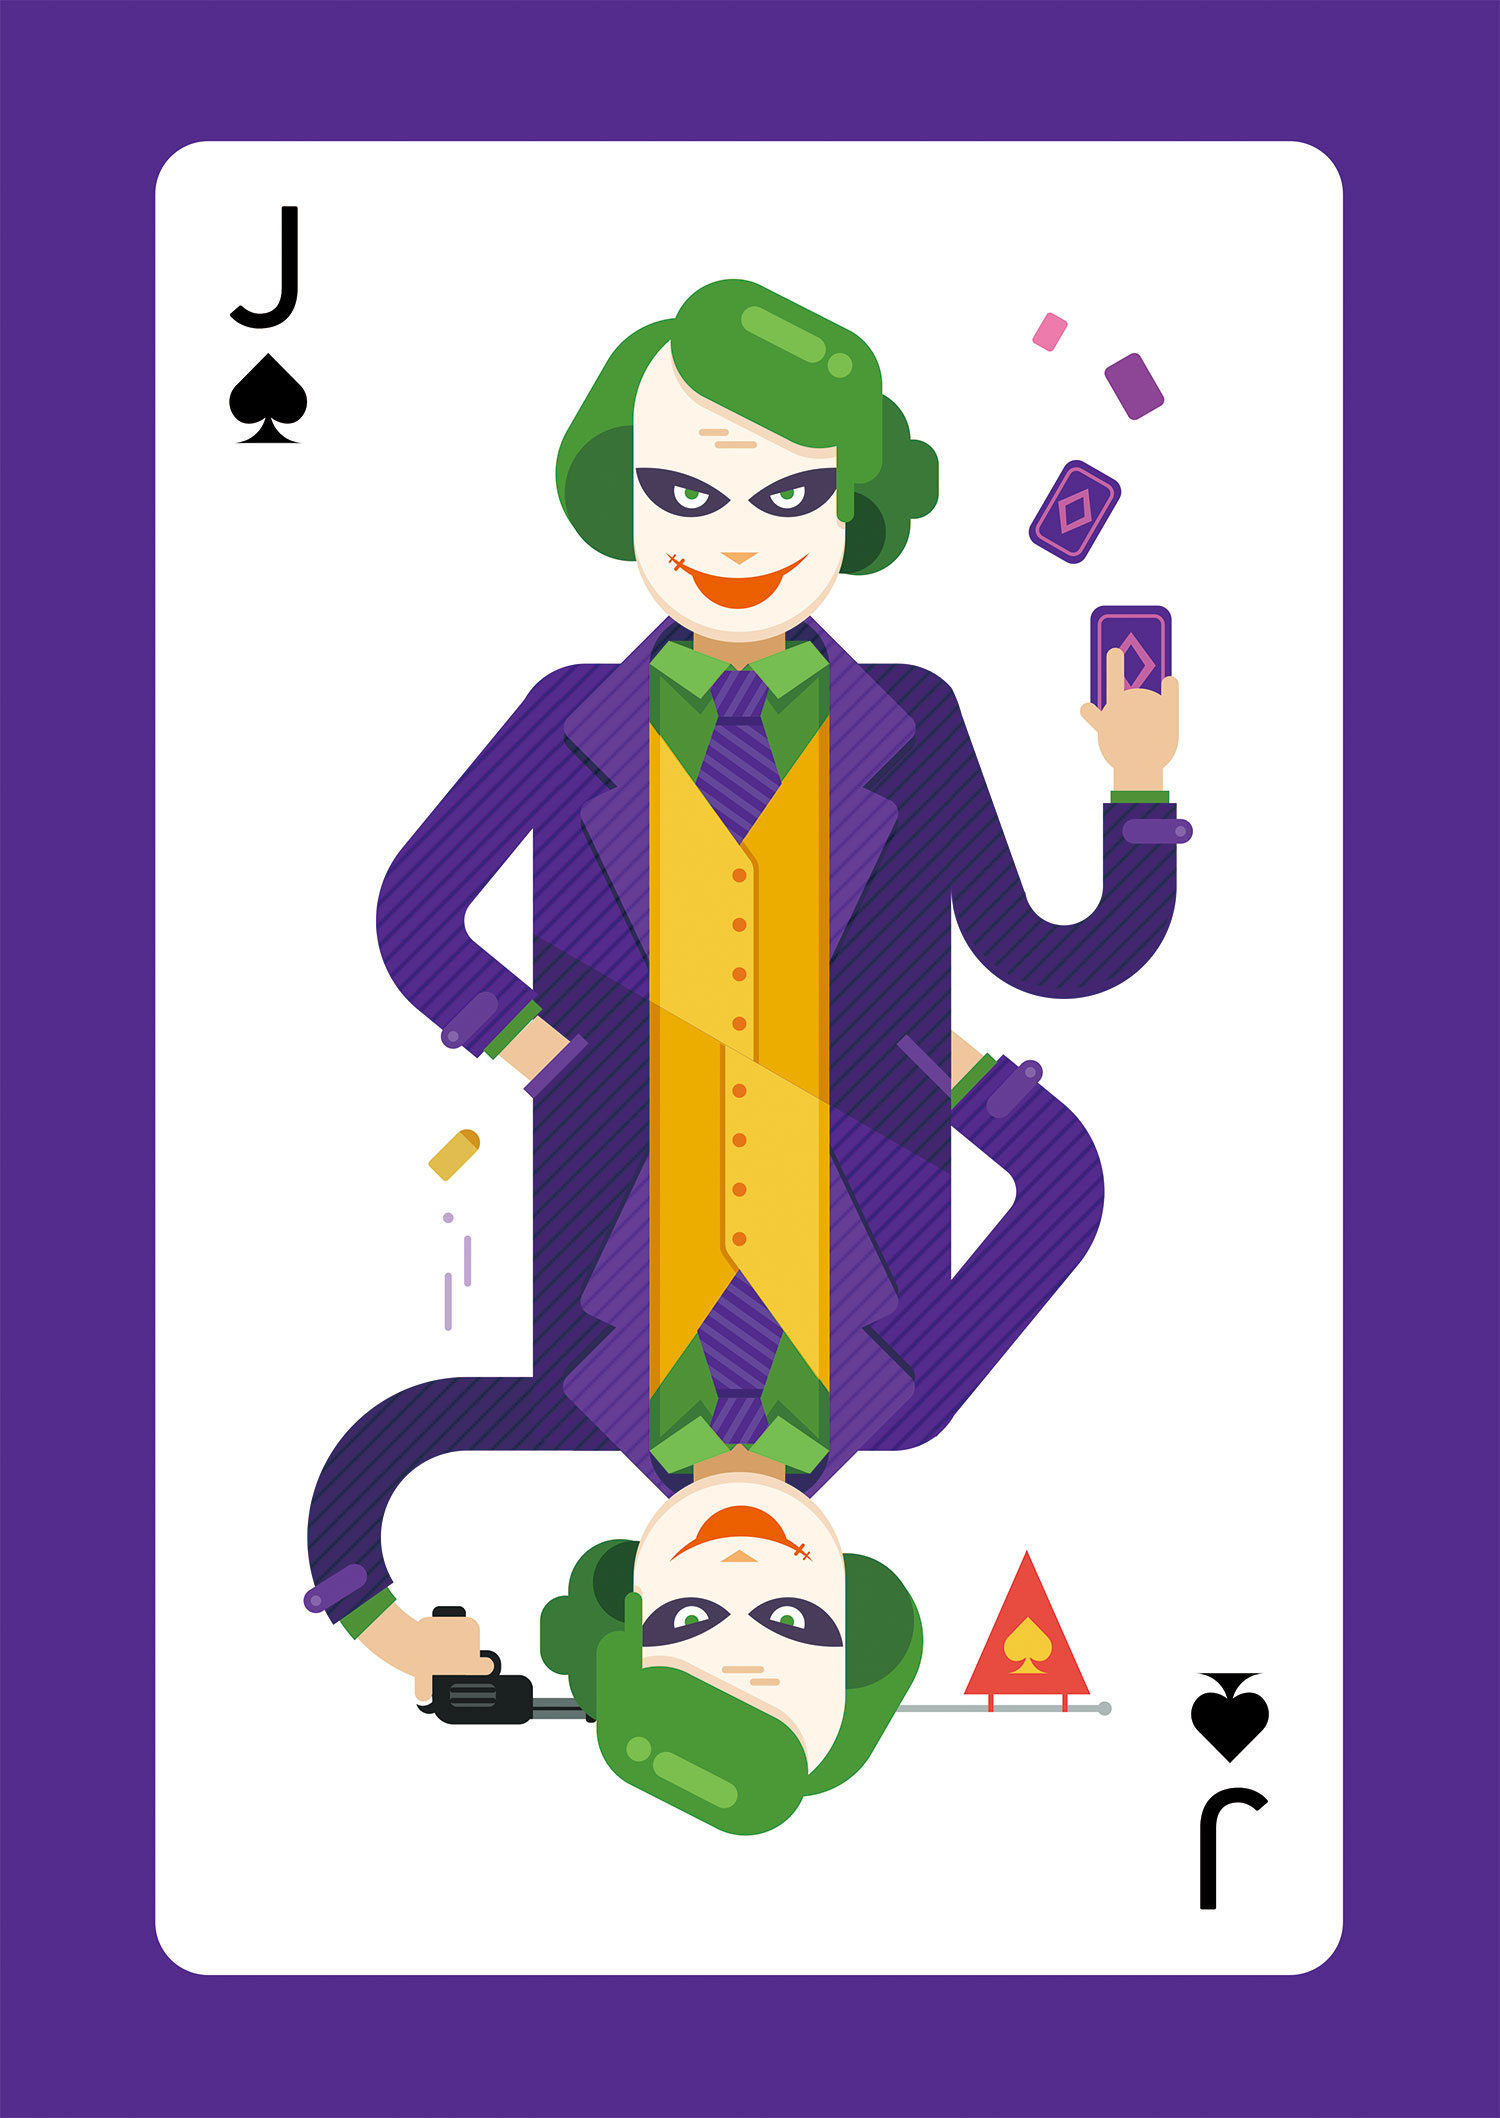 poker-joker-2016.jpg